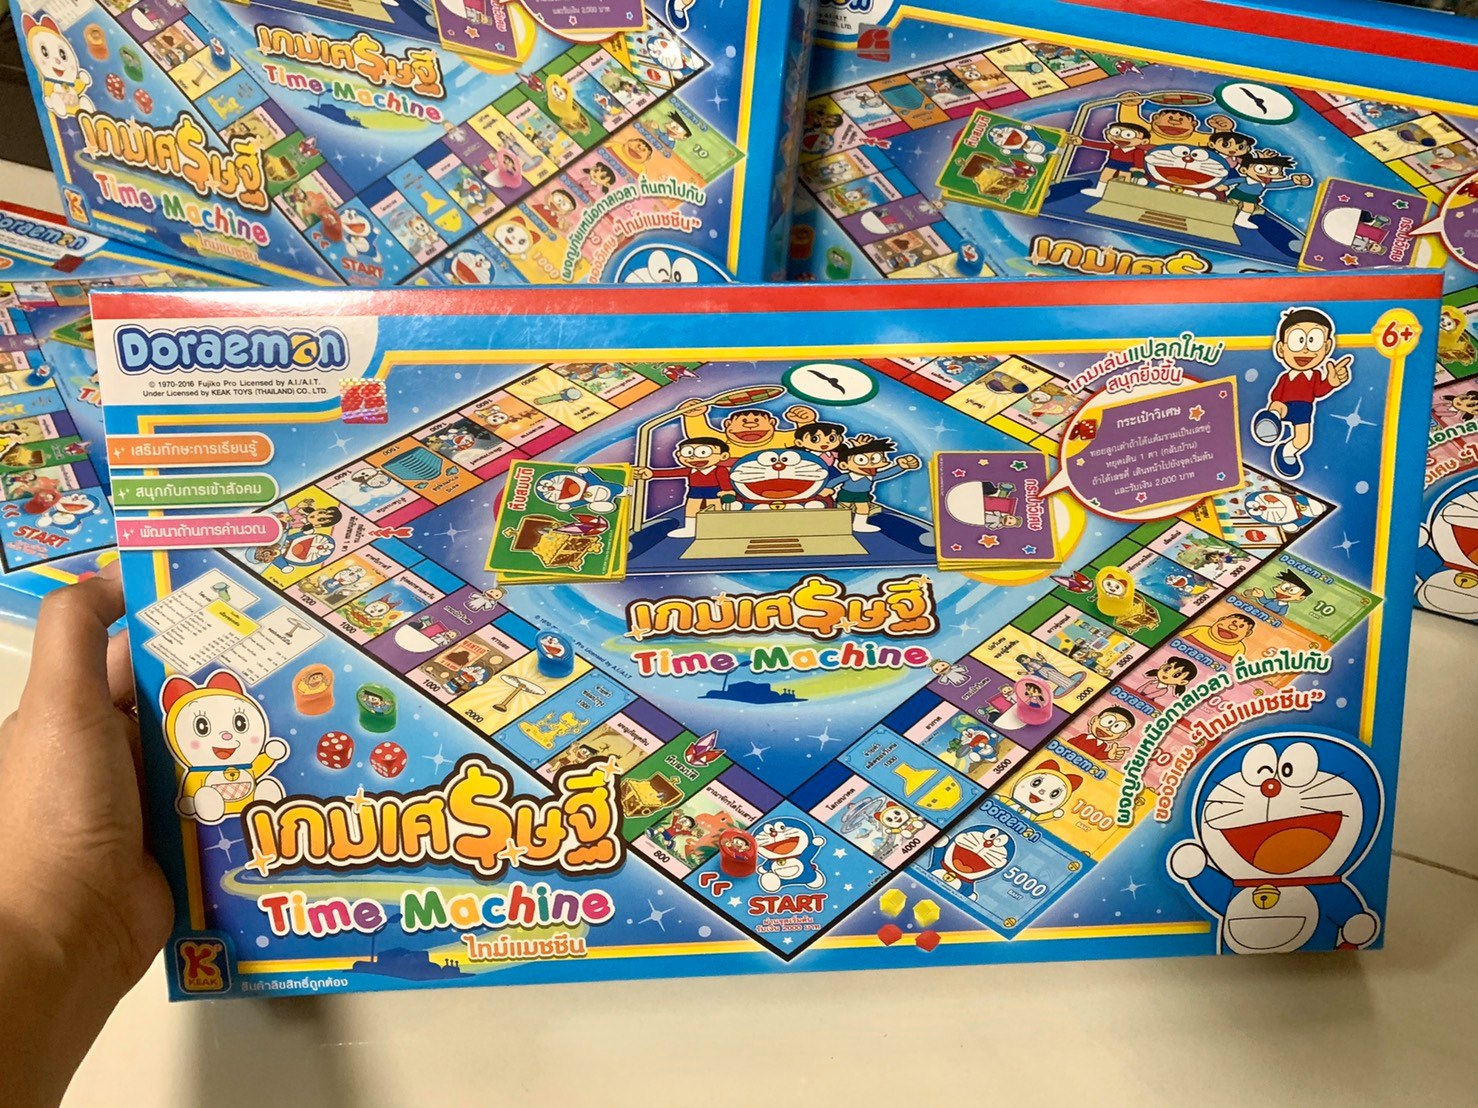 เกมส์เศรษฐี เกมส์กระดาน โดเรมอน (ไซต์ใหญ่) ไทม์แมชชีน เวอร์ชั่นใหม่ เกมกระดาน Doraemon ของเล่น